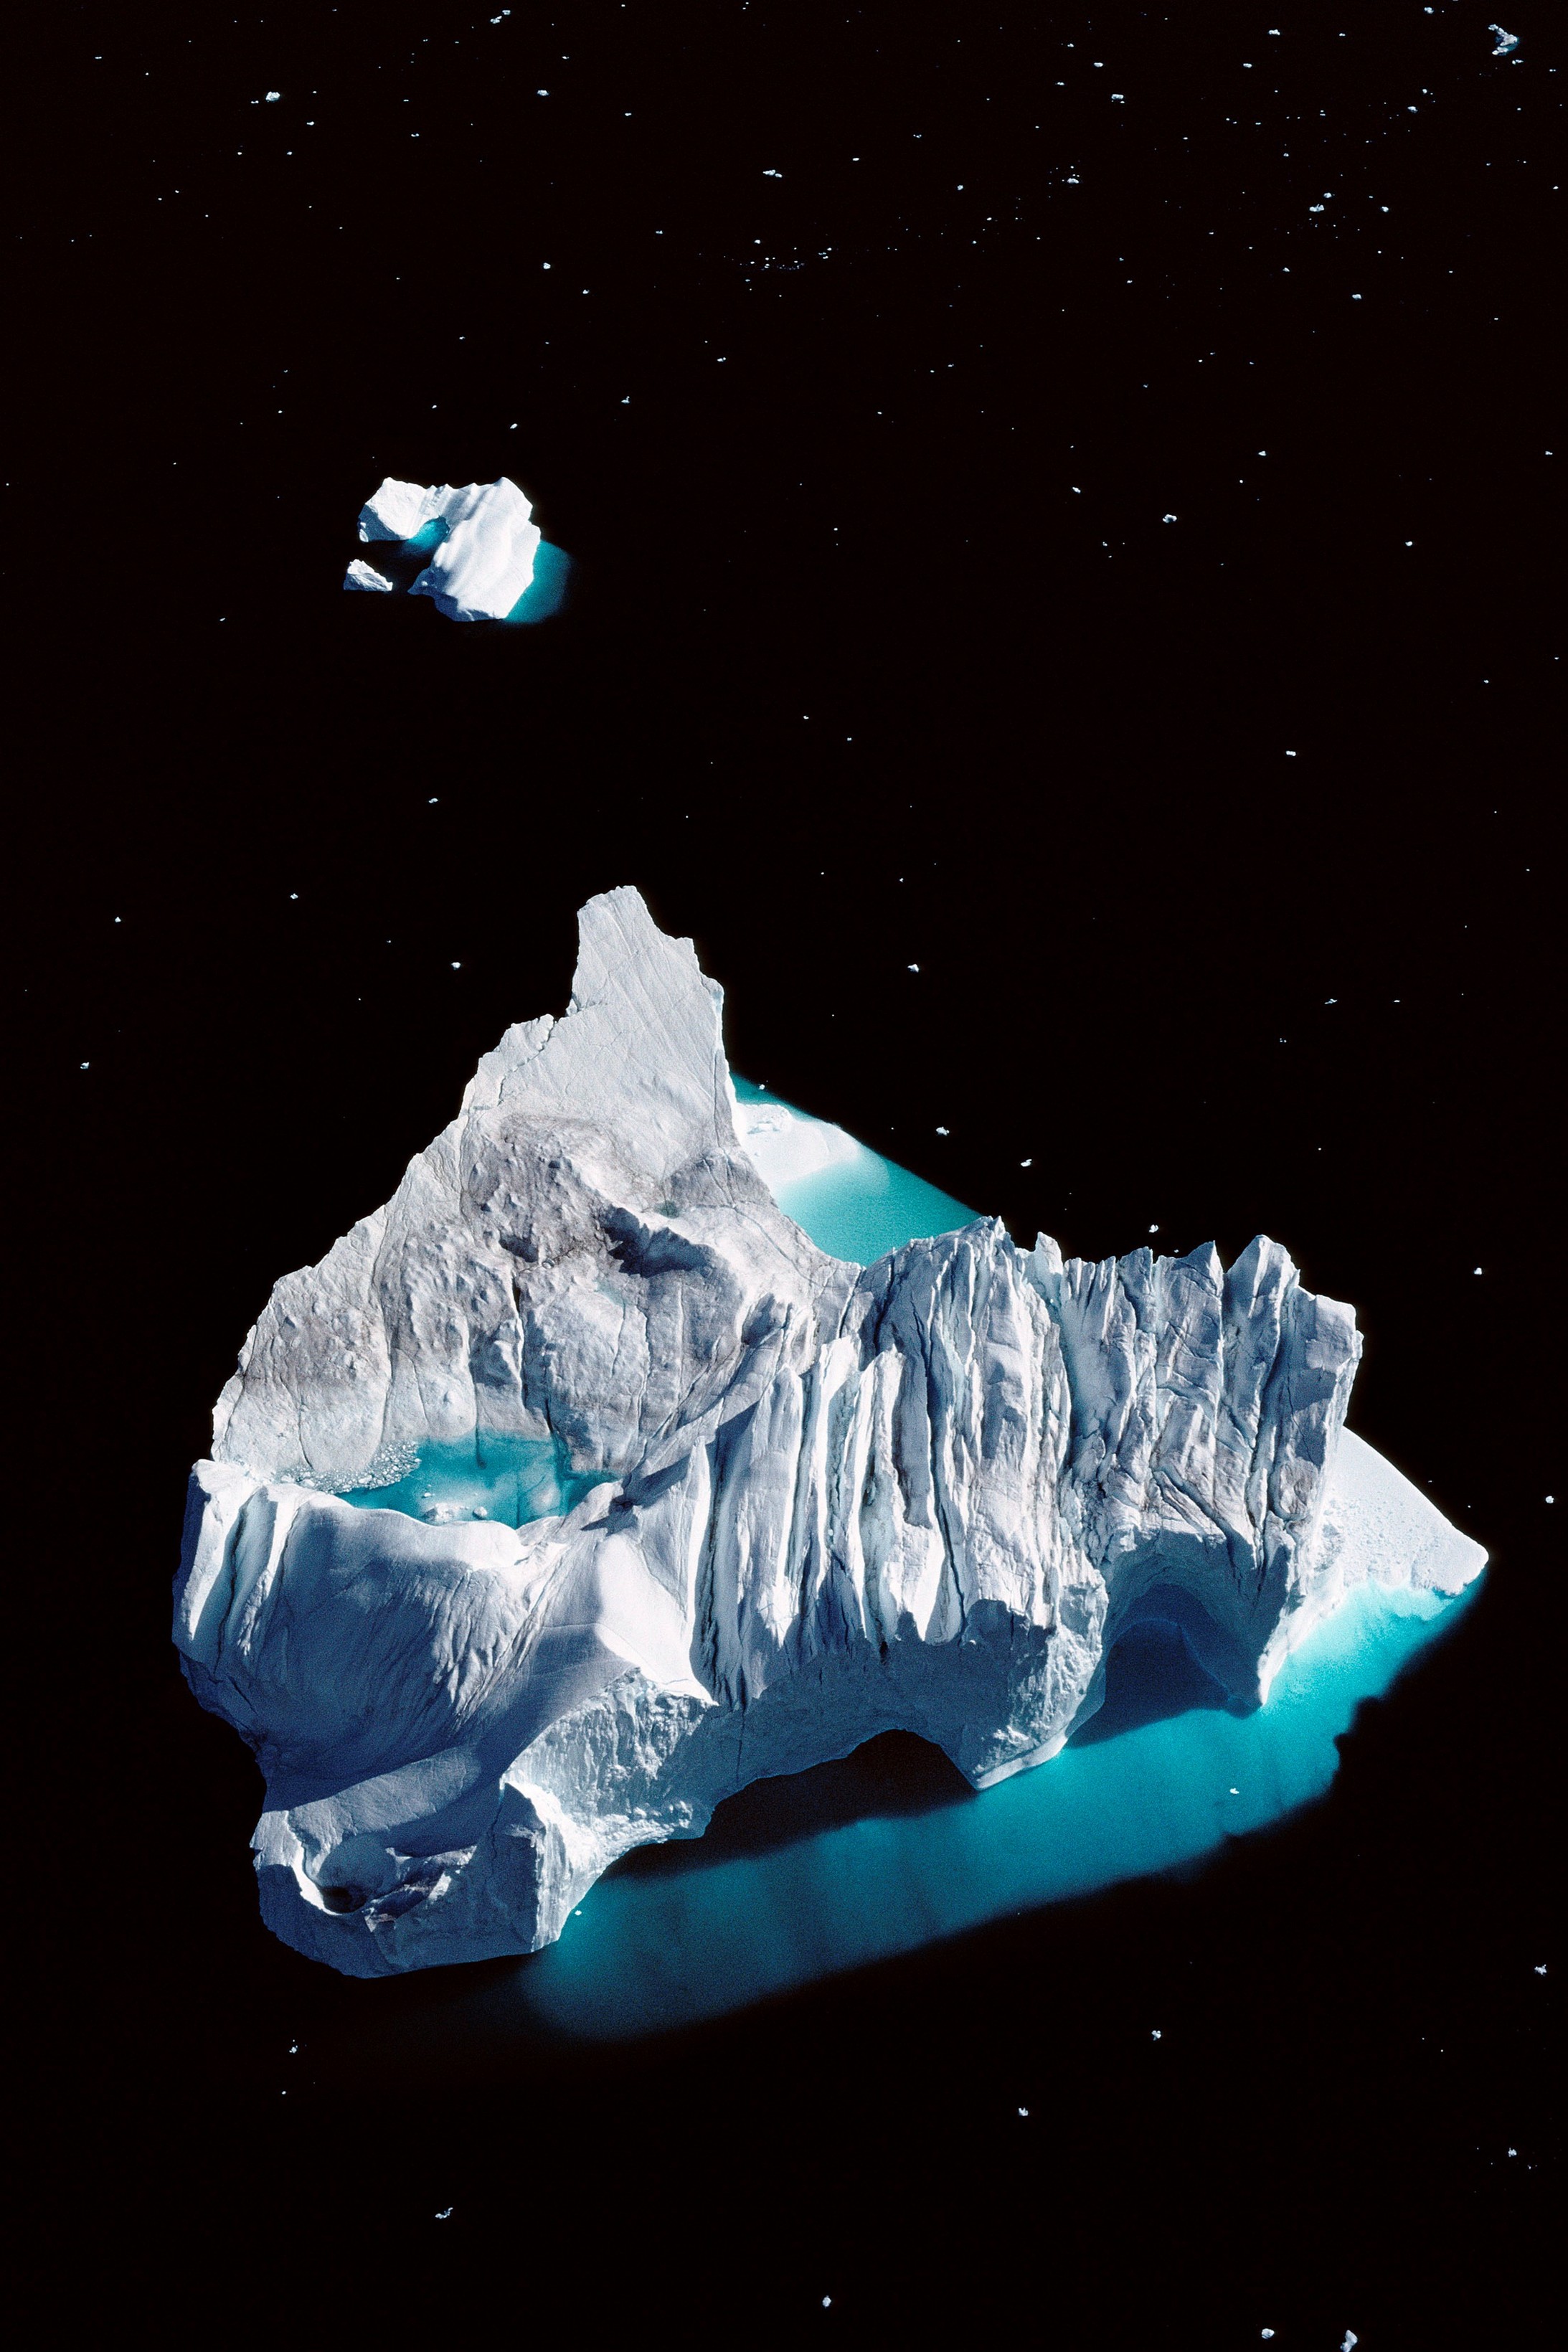  Der Jakobshavn Isbrae Gletscher beschickt durch den Ilulissat Icefjord die westgrönländische Disko Bucht mit Eisbergen: das Naturschauspiel hat auf der Nordhalbkugel nicht seinesgleichen.

Die Unesco billigte 2004 dem 40 Kilometer langen Eisfjord die Bedeutung von Weltnaturerbe zu. Die Auszeichnung gilt nicht dem  Eiskanal allein, sondern der ganzen Naturveranstaltung um das Fischerdorf Ilulissat („Eisberg“ auf grönländisch). Der Jakobshavner Gletscher, eine Zunge des grönländischen Inlandeises, hat es …